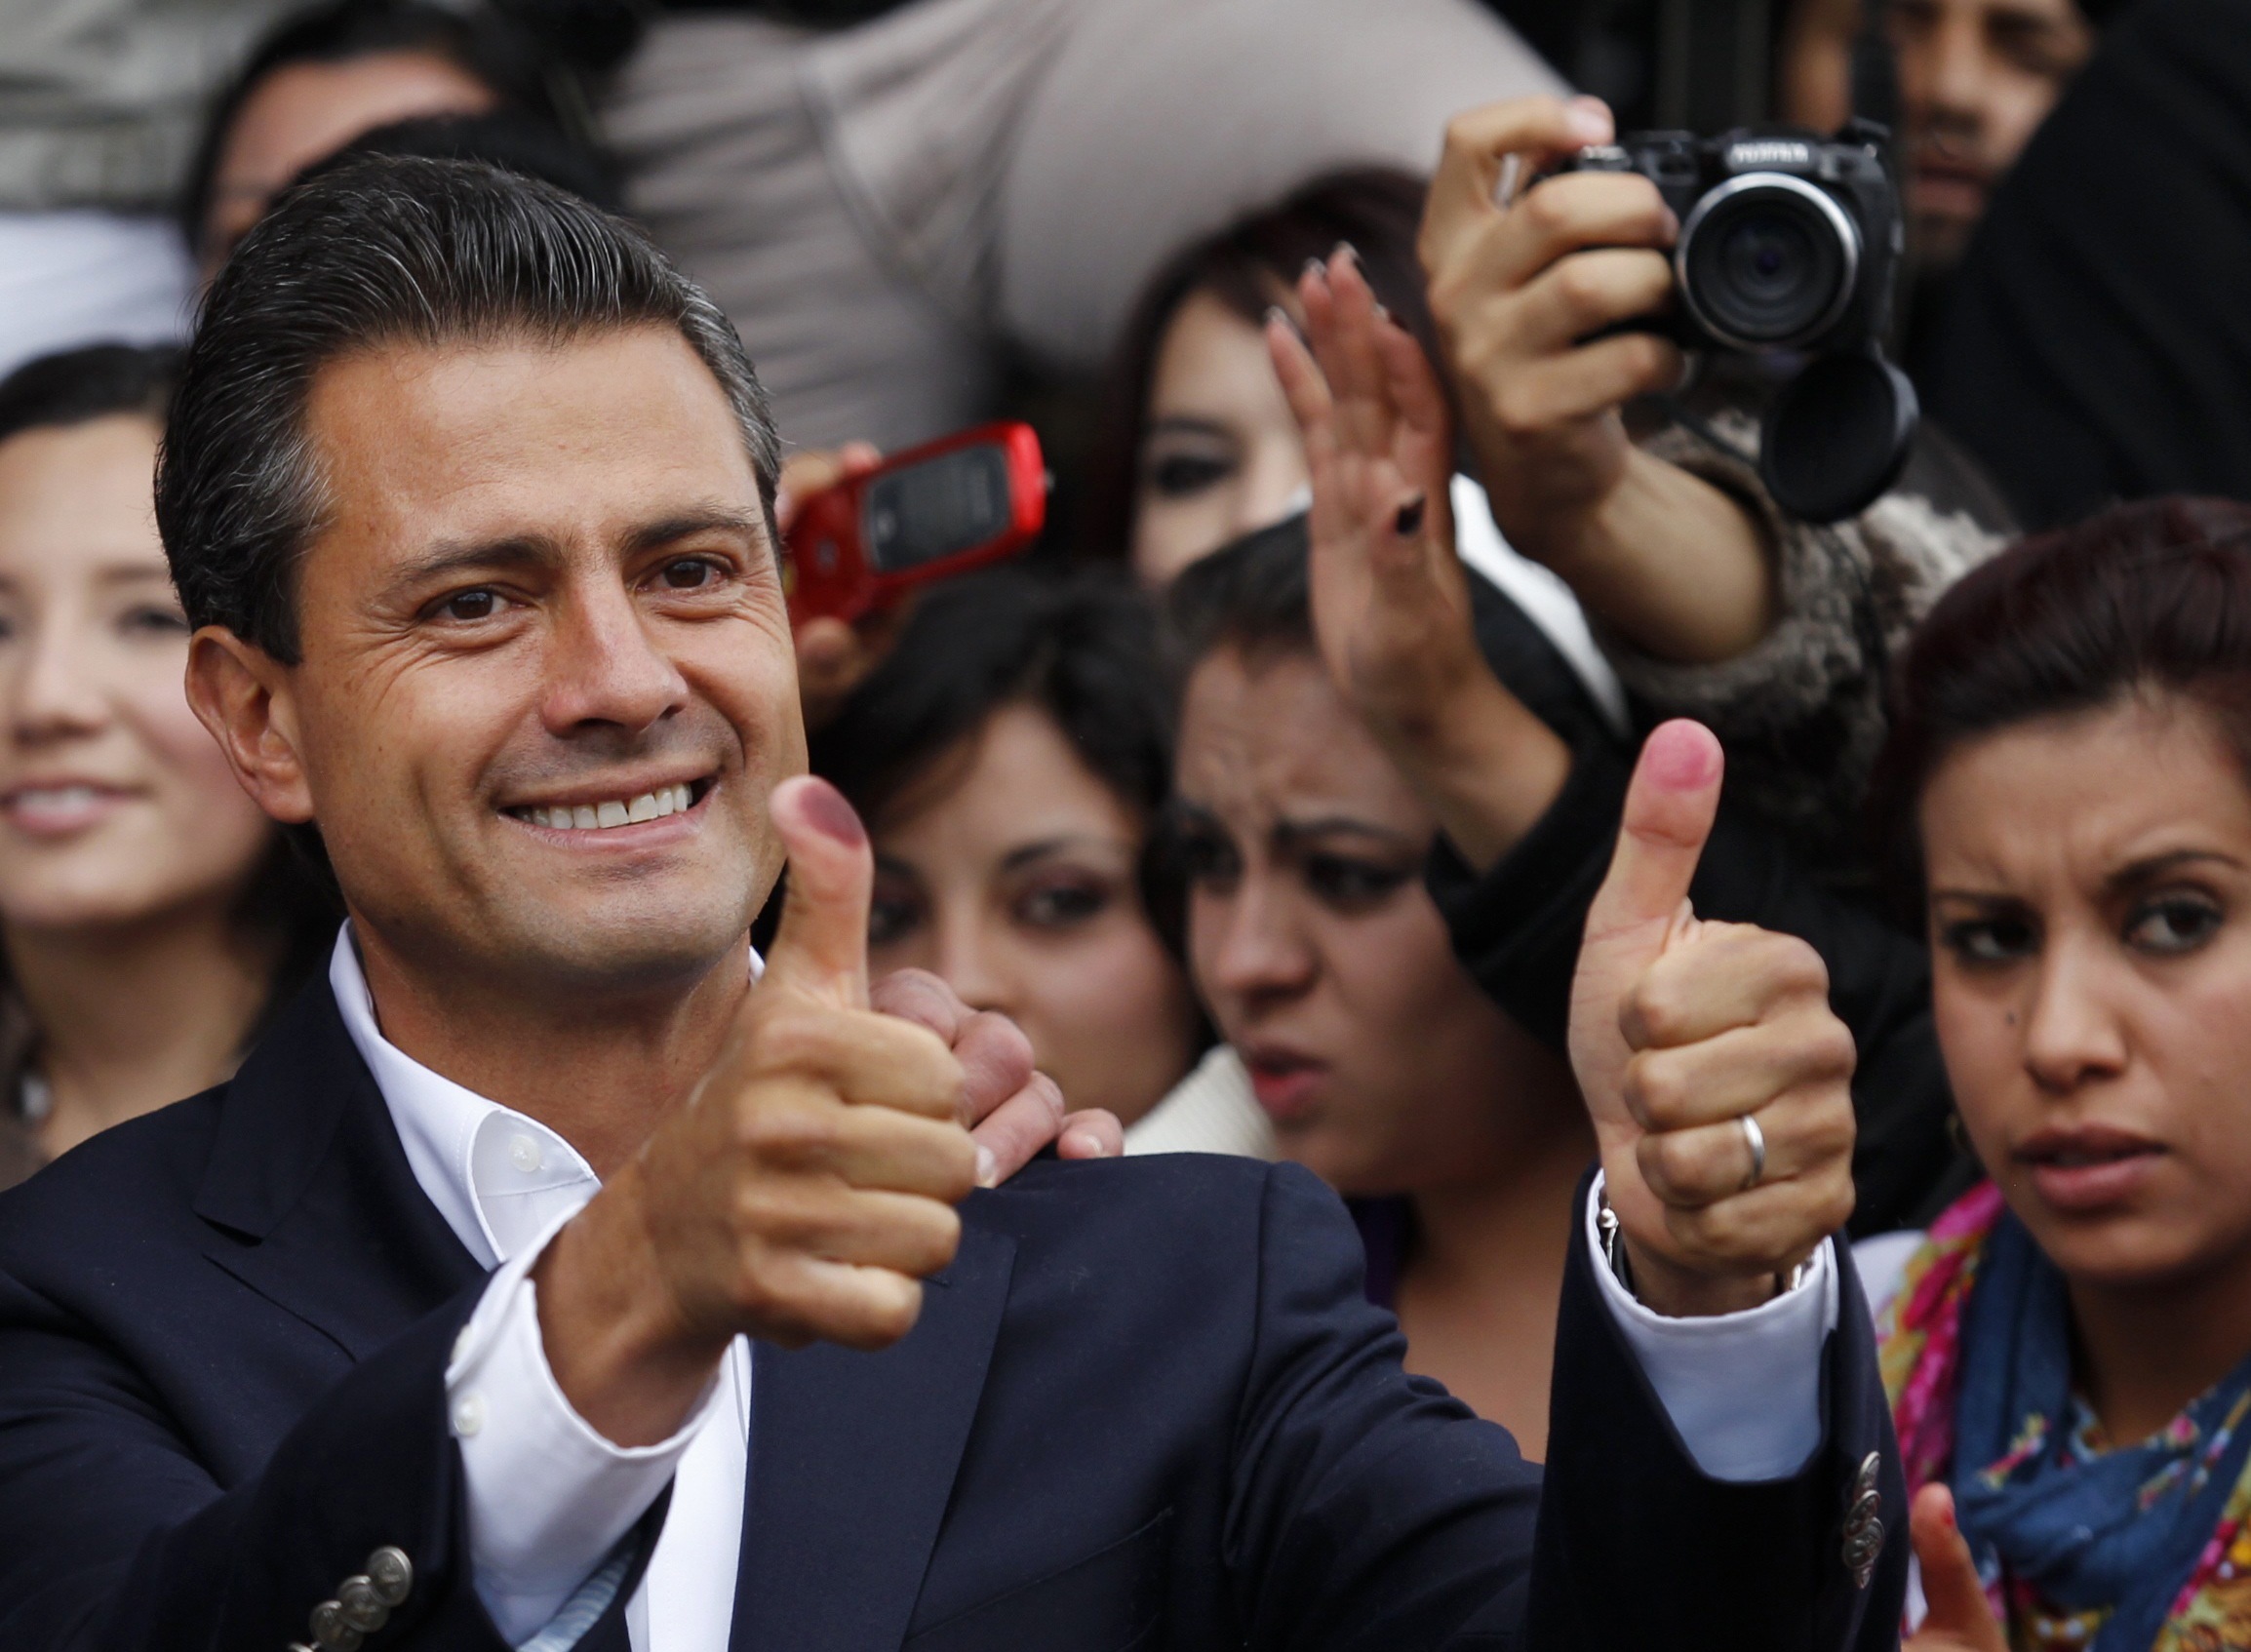 Αλλάζει σελίδα το Μεξικό, νικητής των εκλογών ο Ενρίκε Πένια Νιέτο